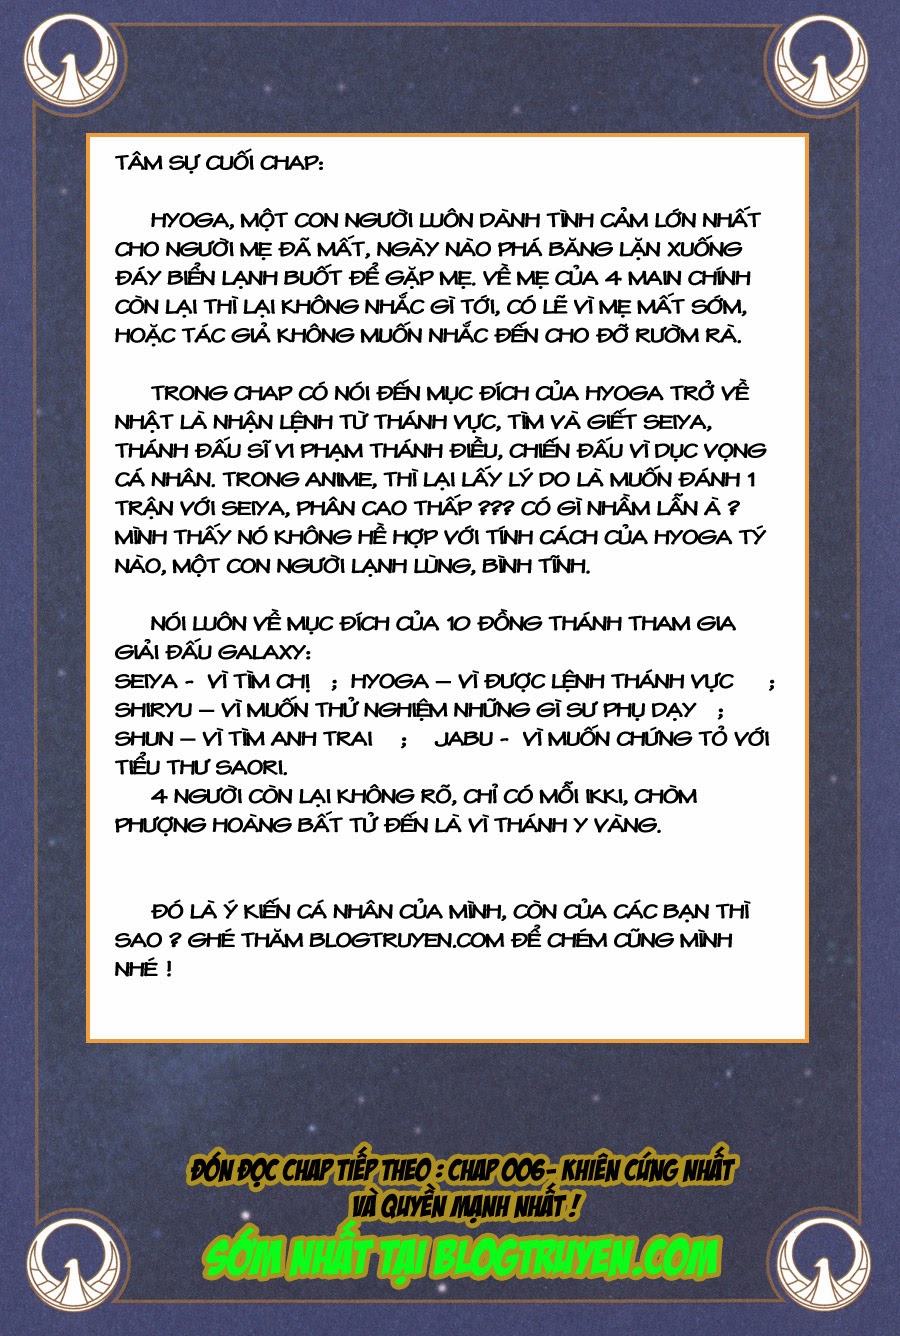 Áo Giáp Vàng vol 01 chap 005 - thánh y chòm thiên nga trang 38